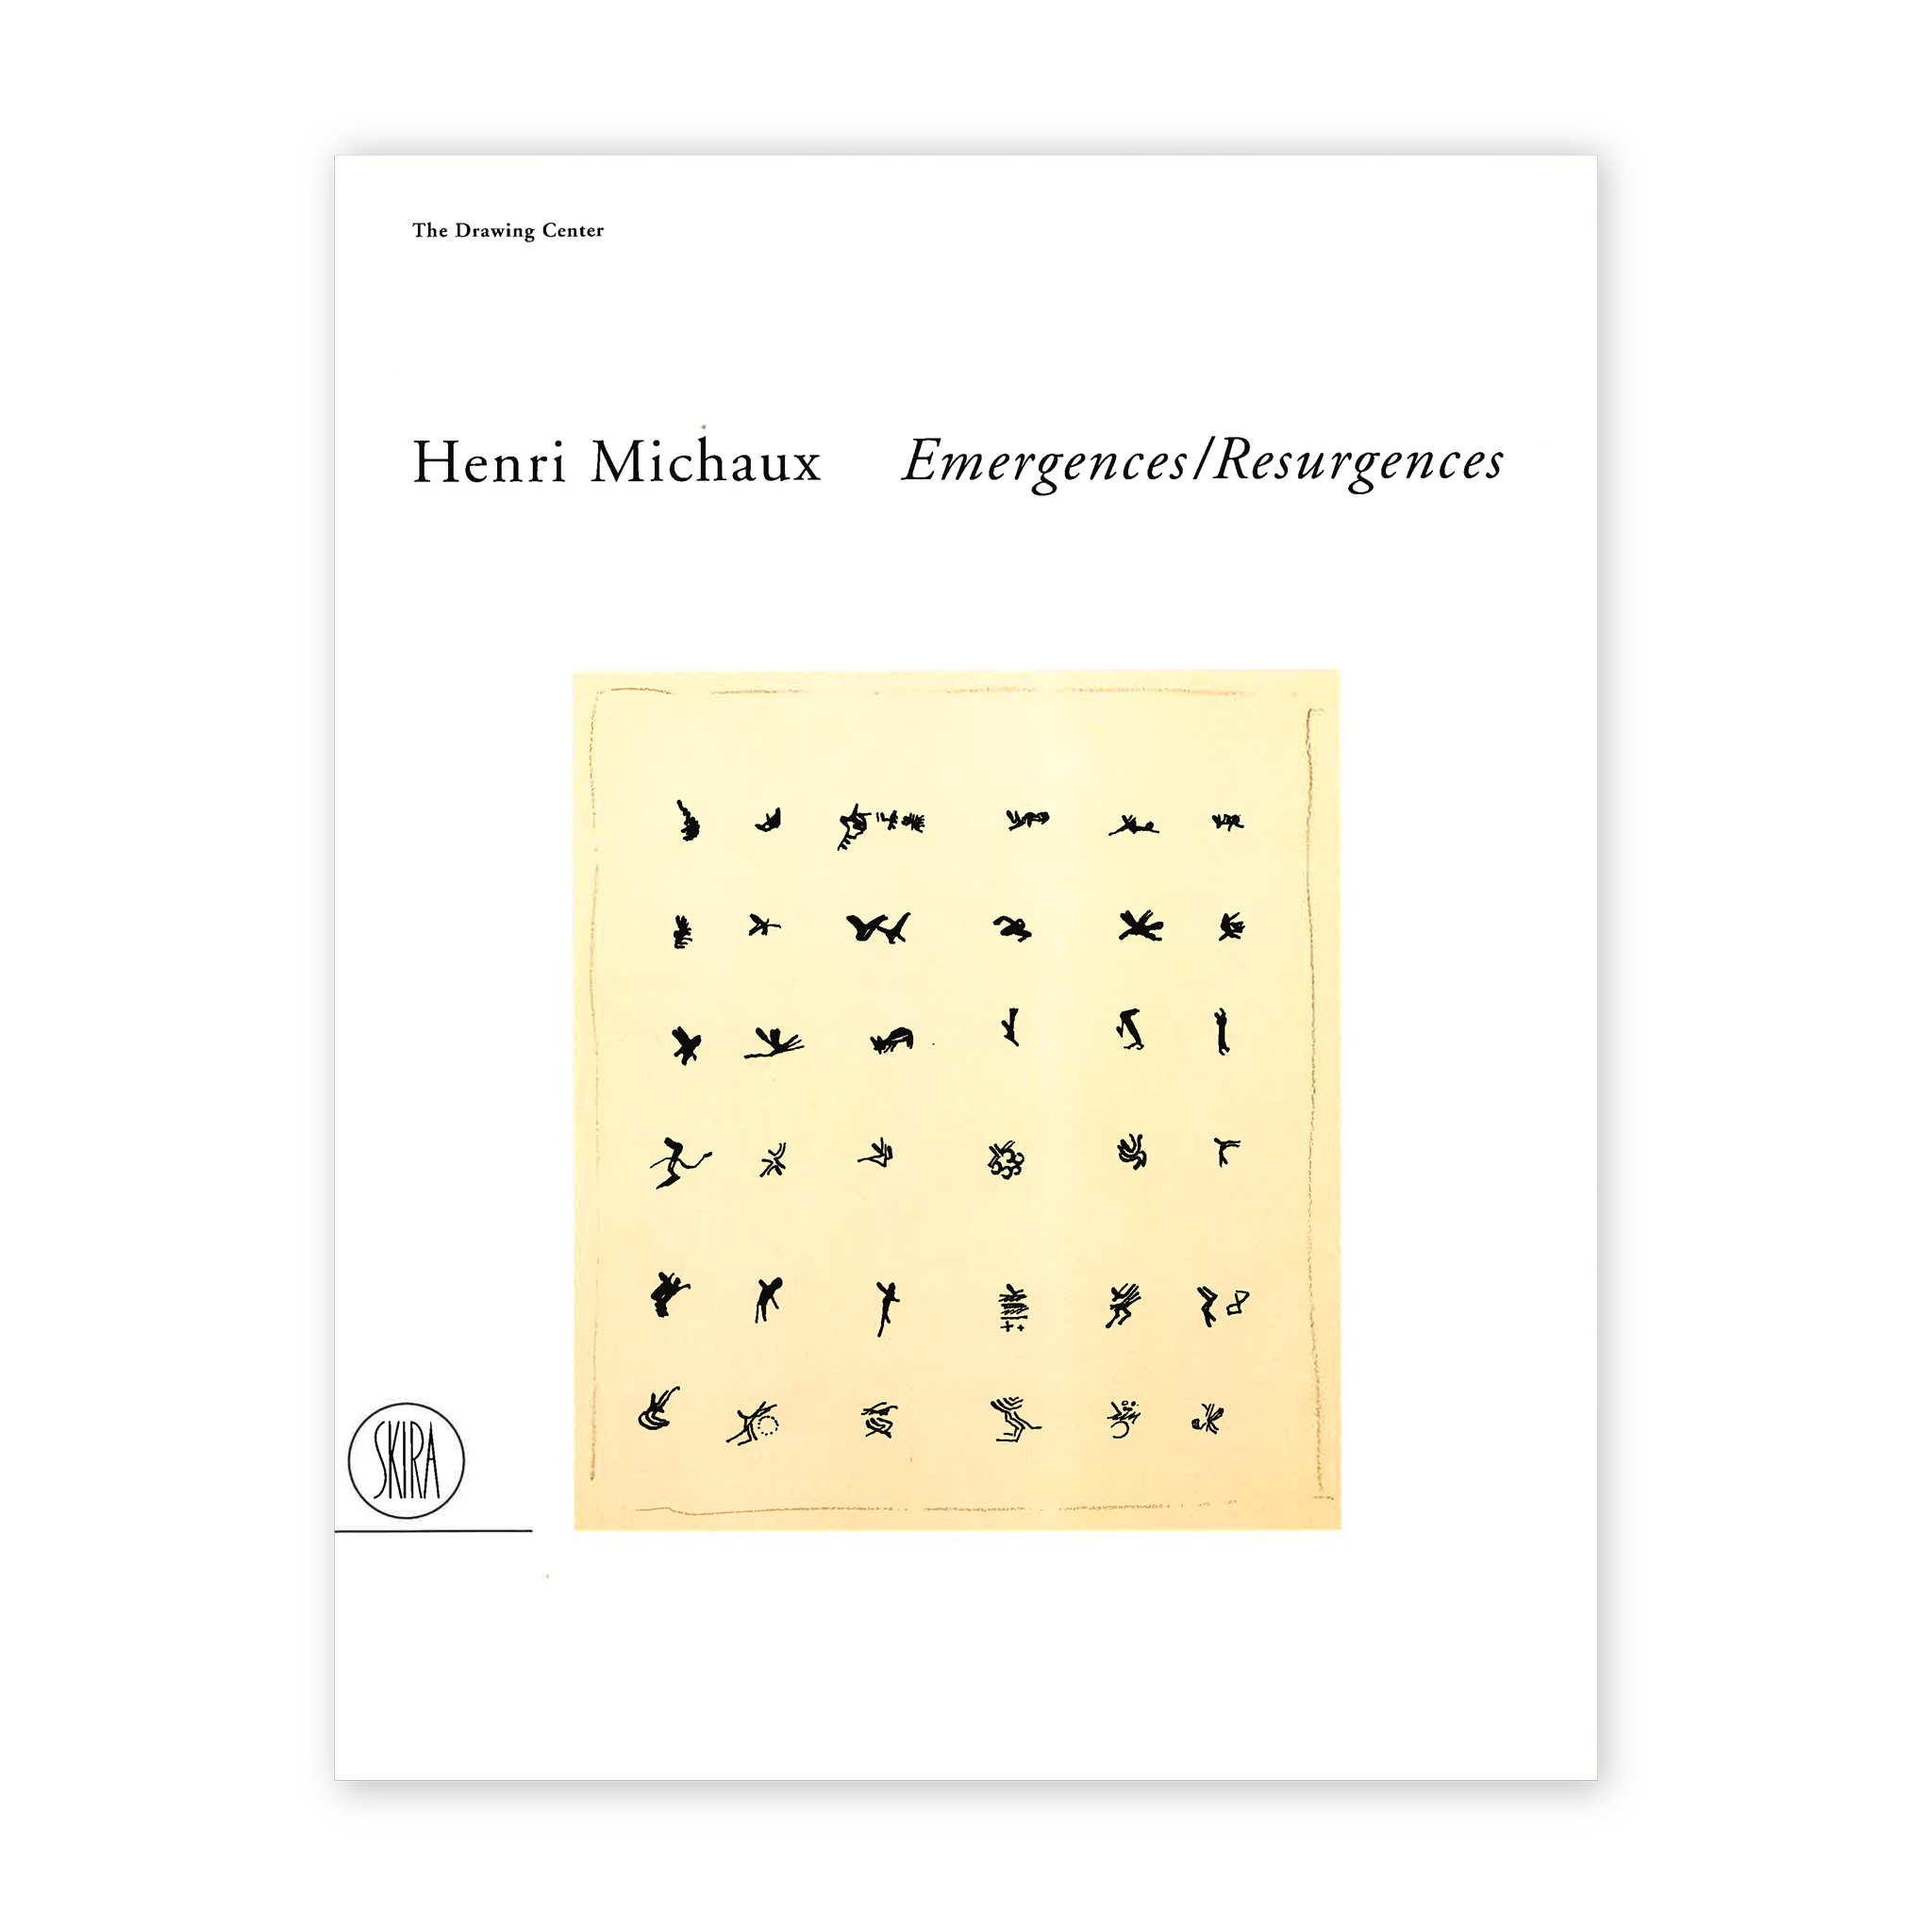 Front cover for "Henri Michaux: Emergences/ Resurgences"